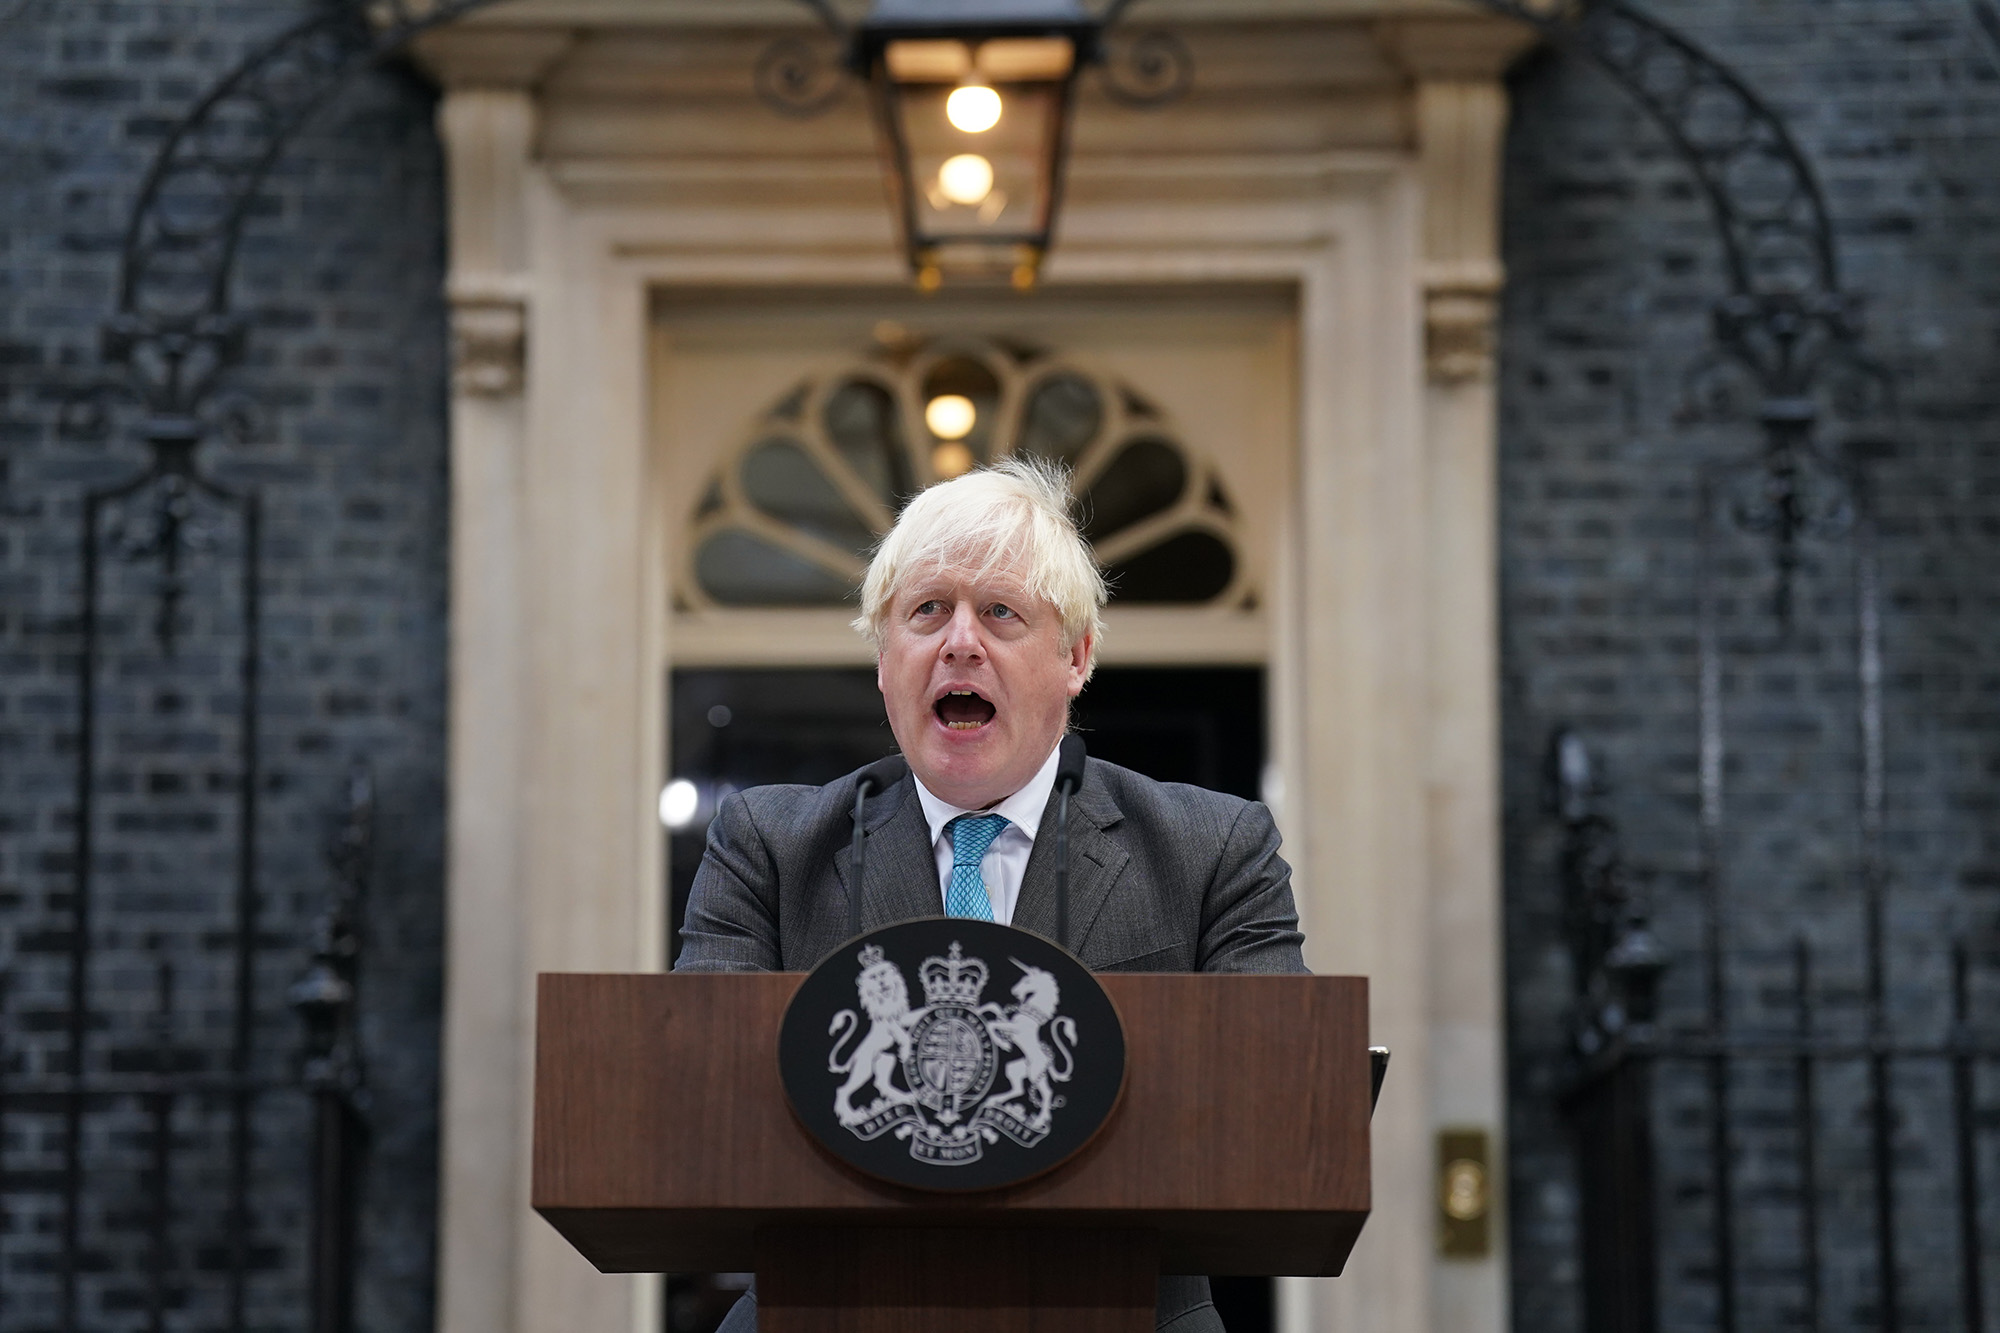 Outgoing Prime Minister Boris Johnson makes a speech outside 10 Downing Street, London, on September 6.